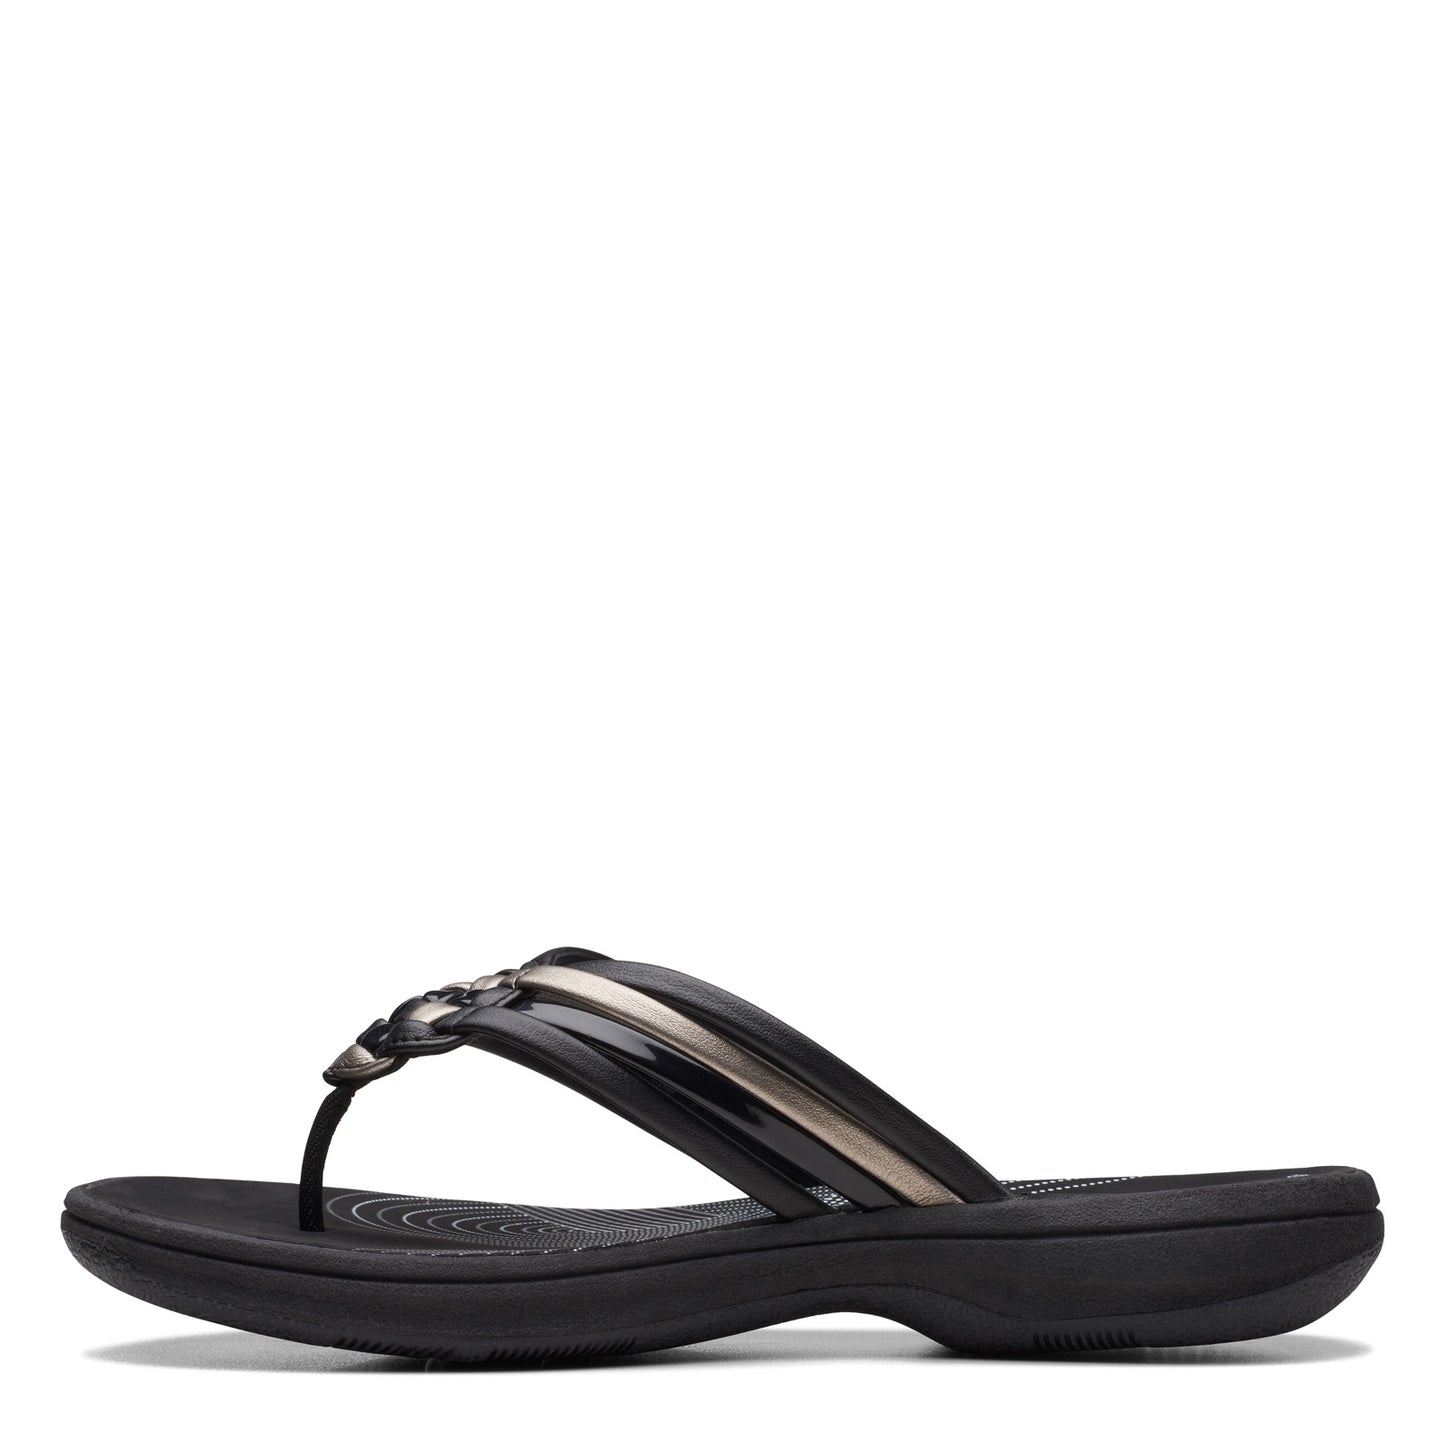 Peltz Shoes  Women's Clarks Breeze Coral Sandal Black Combi 26171935